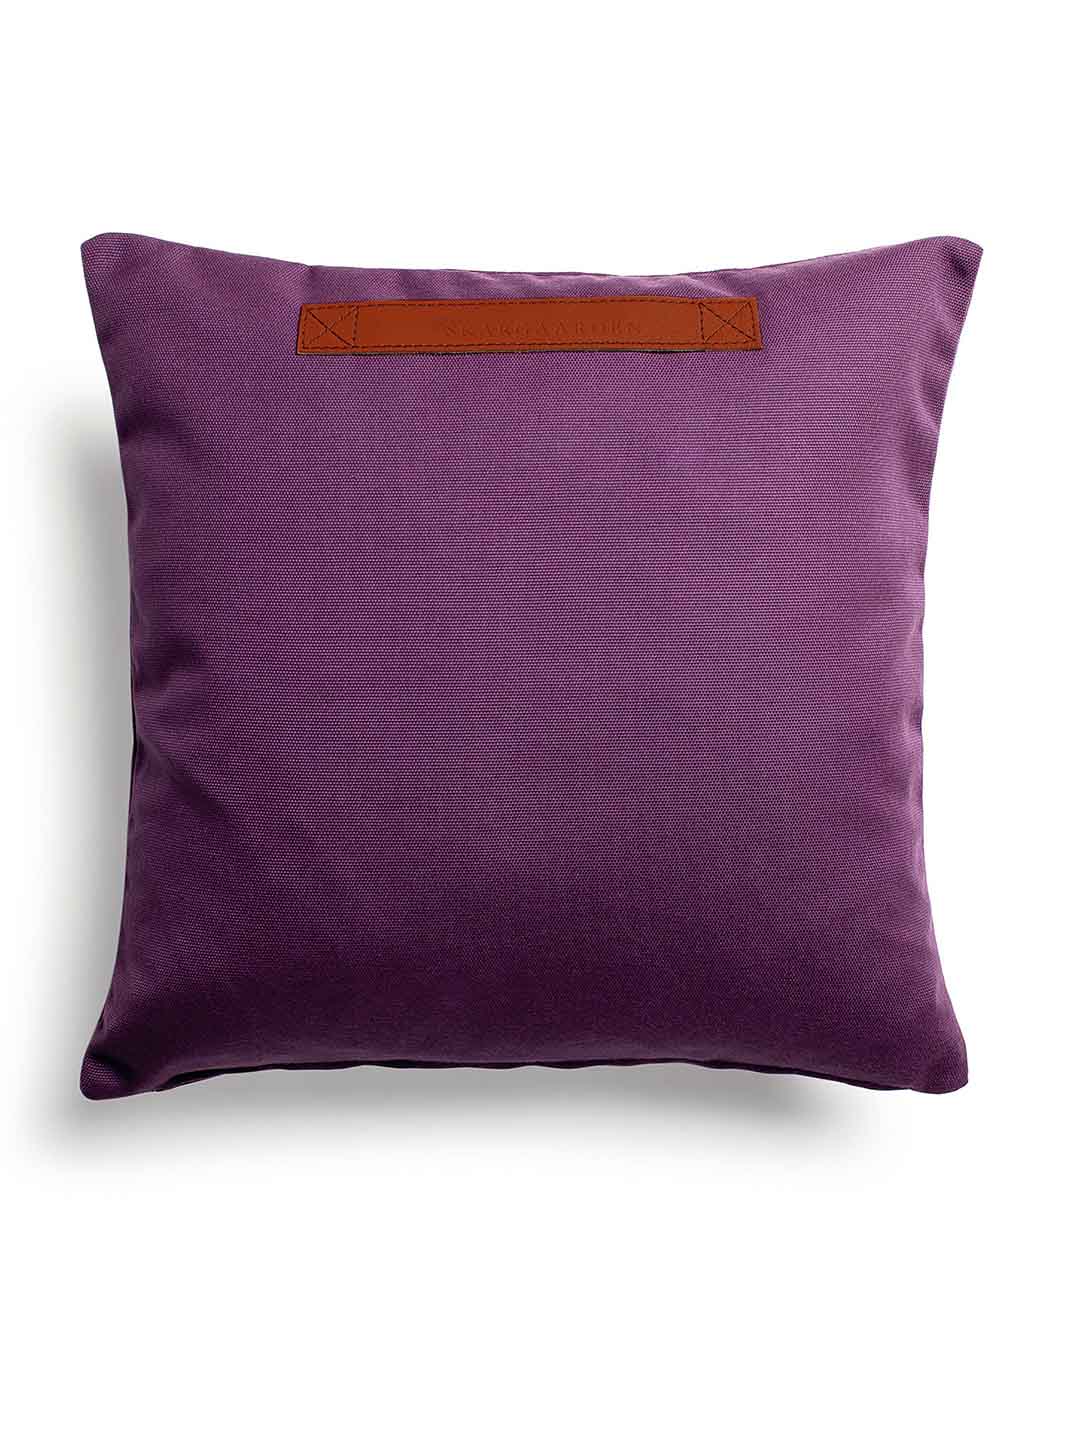 Декоративная подушка Skargaarden 50х50см фиолетового цвета на террасу на белом фоне